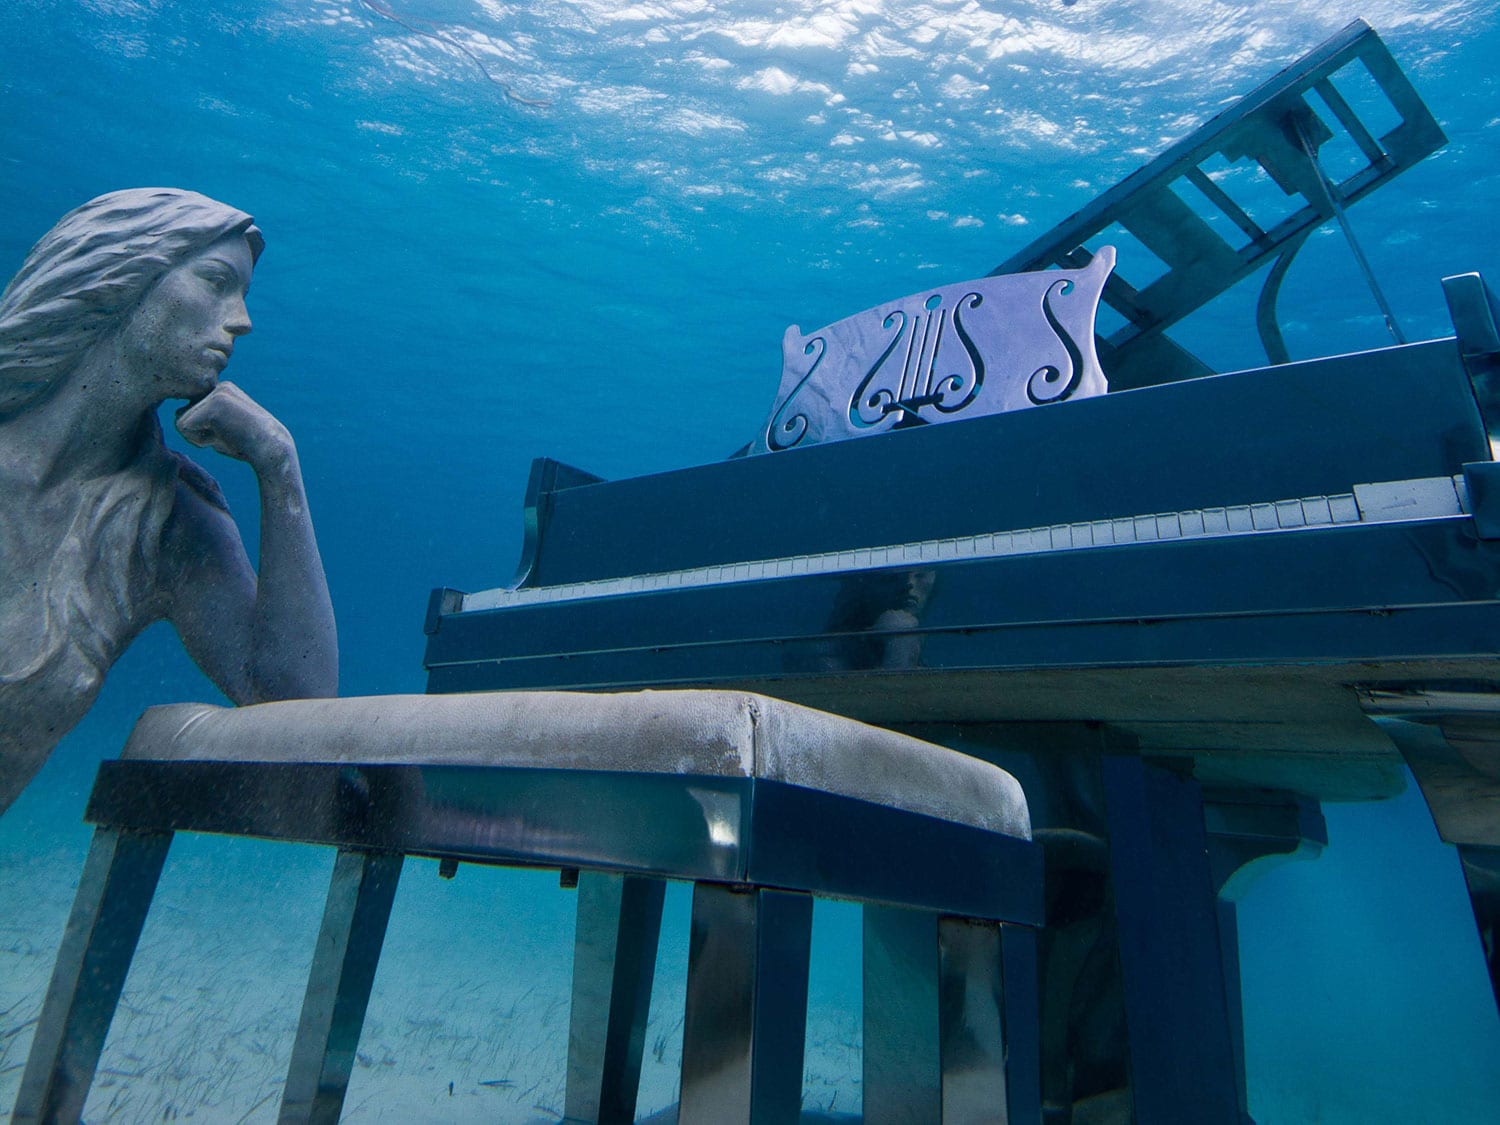 Musha Cay mermaid statue underwater.